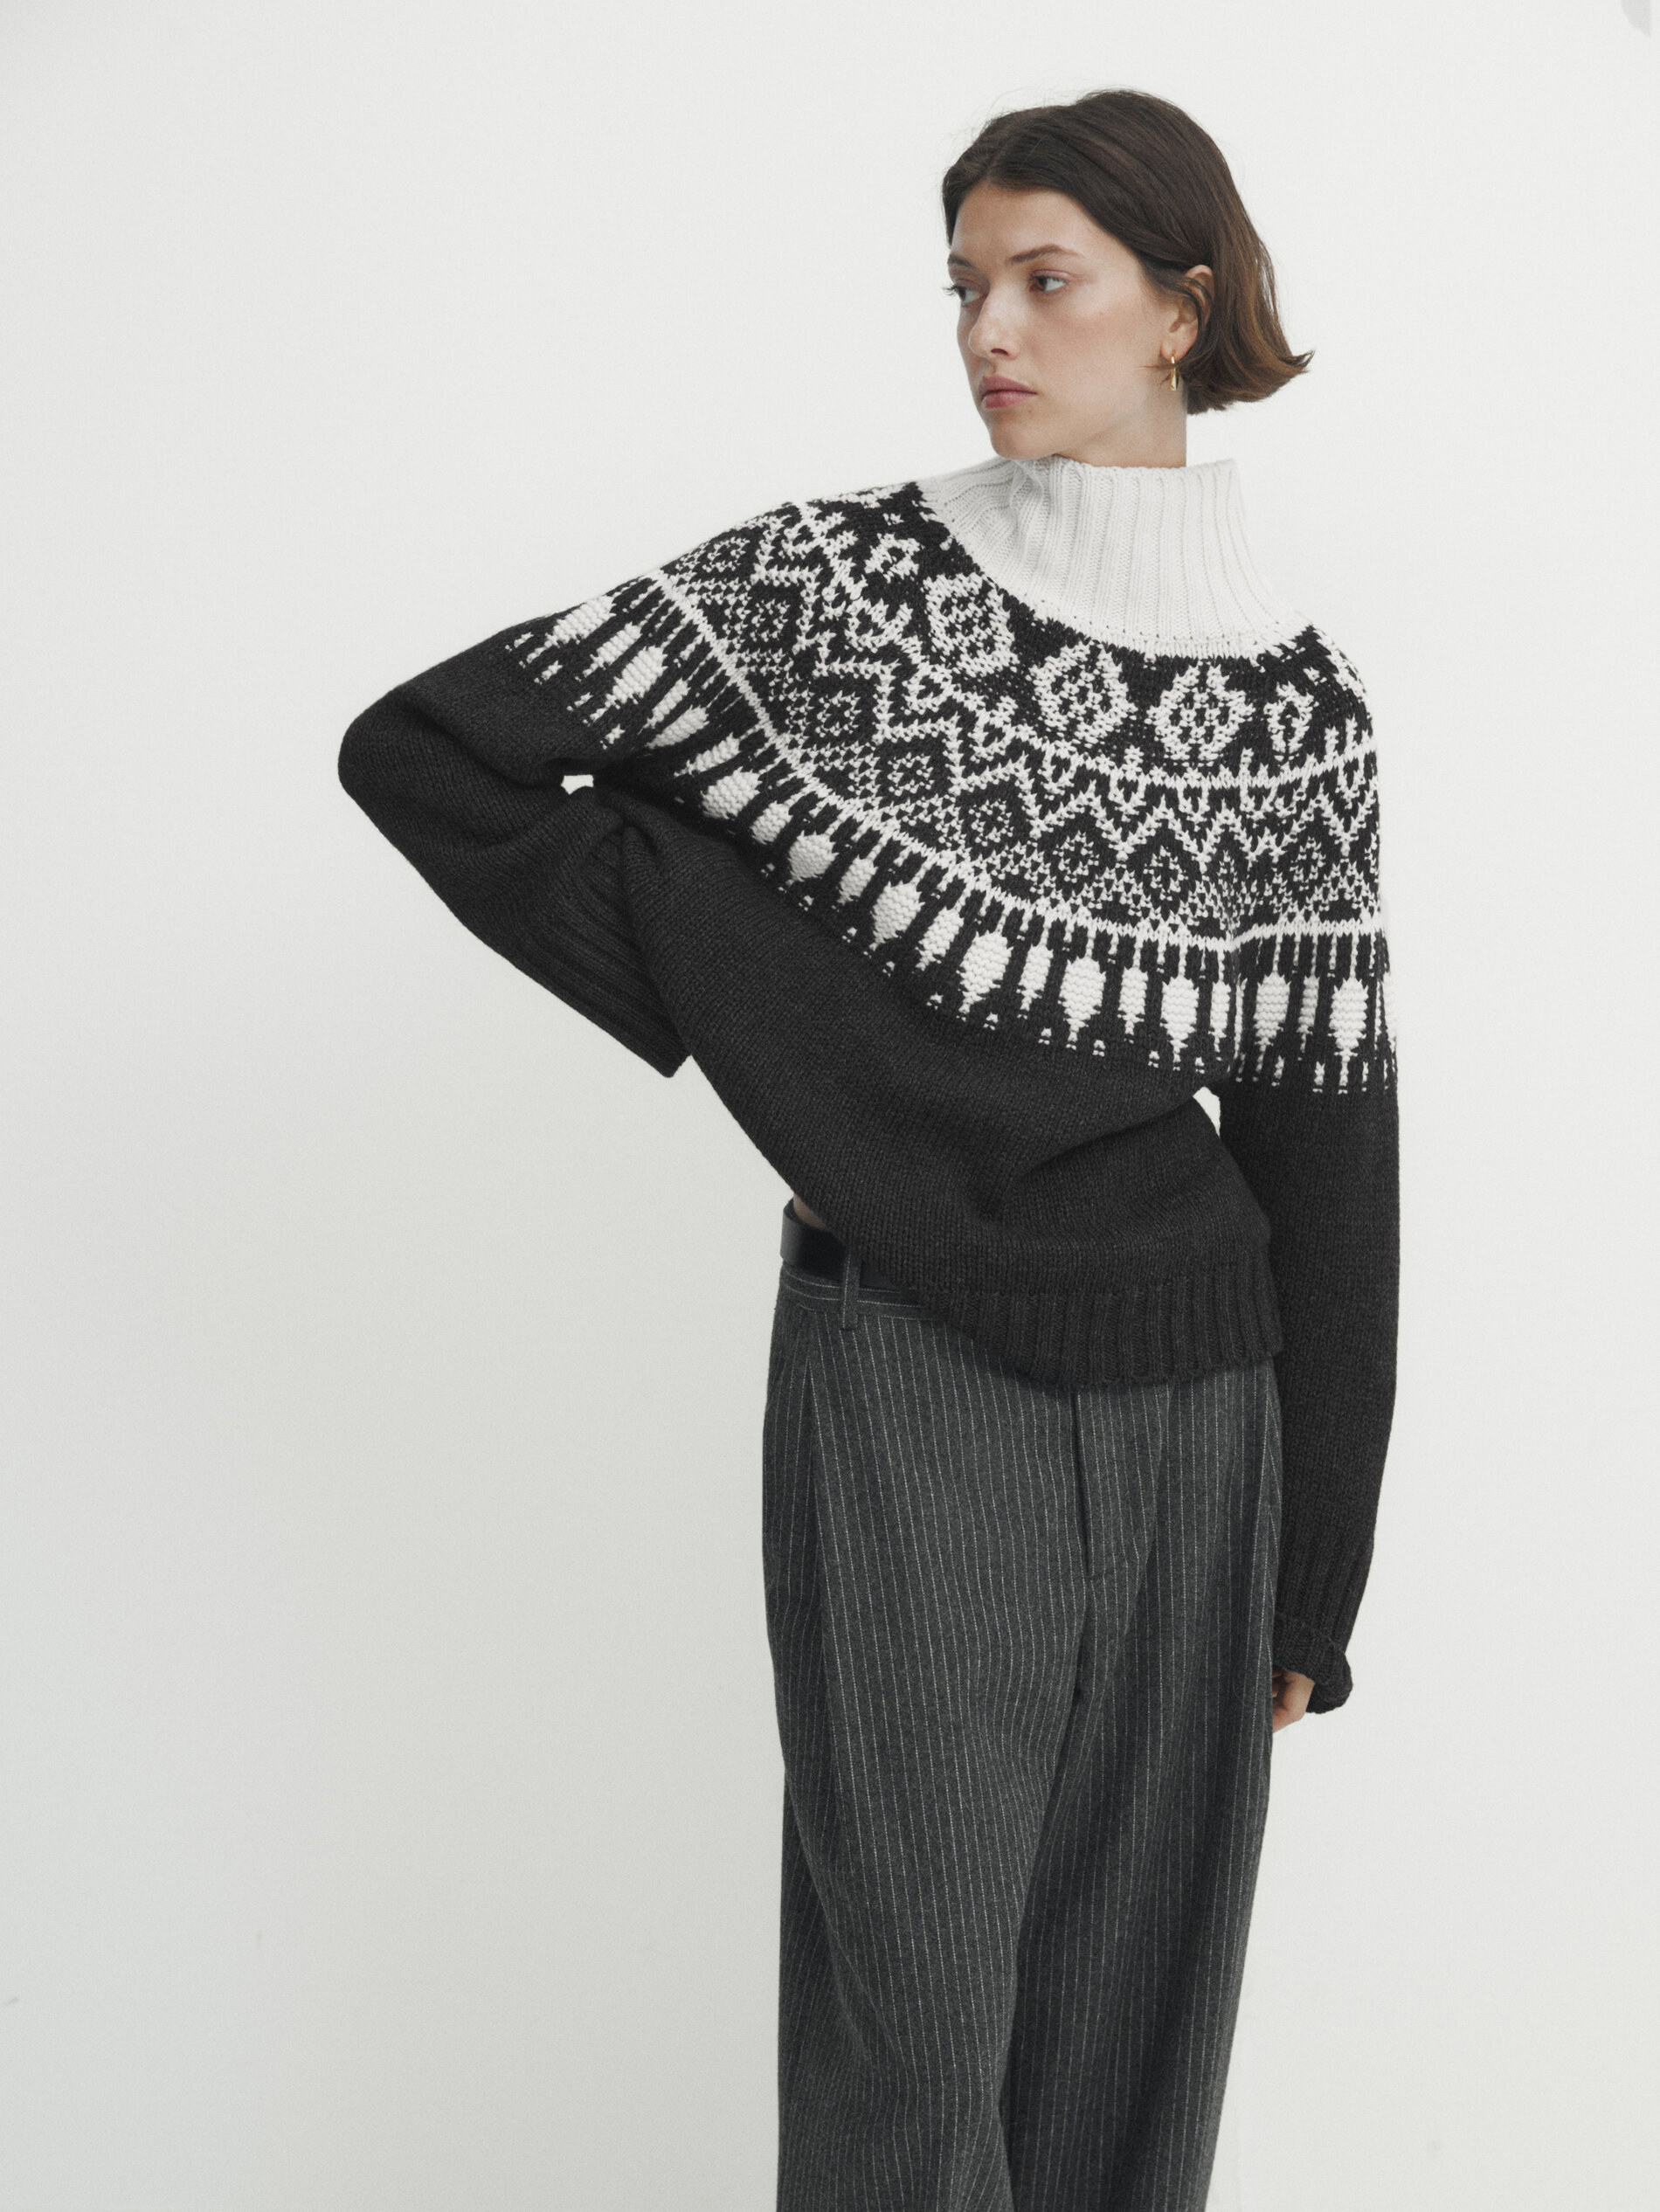 Massimo Dutti Jacquard Knit Sweater